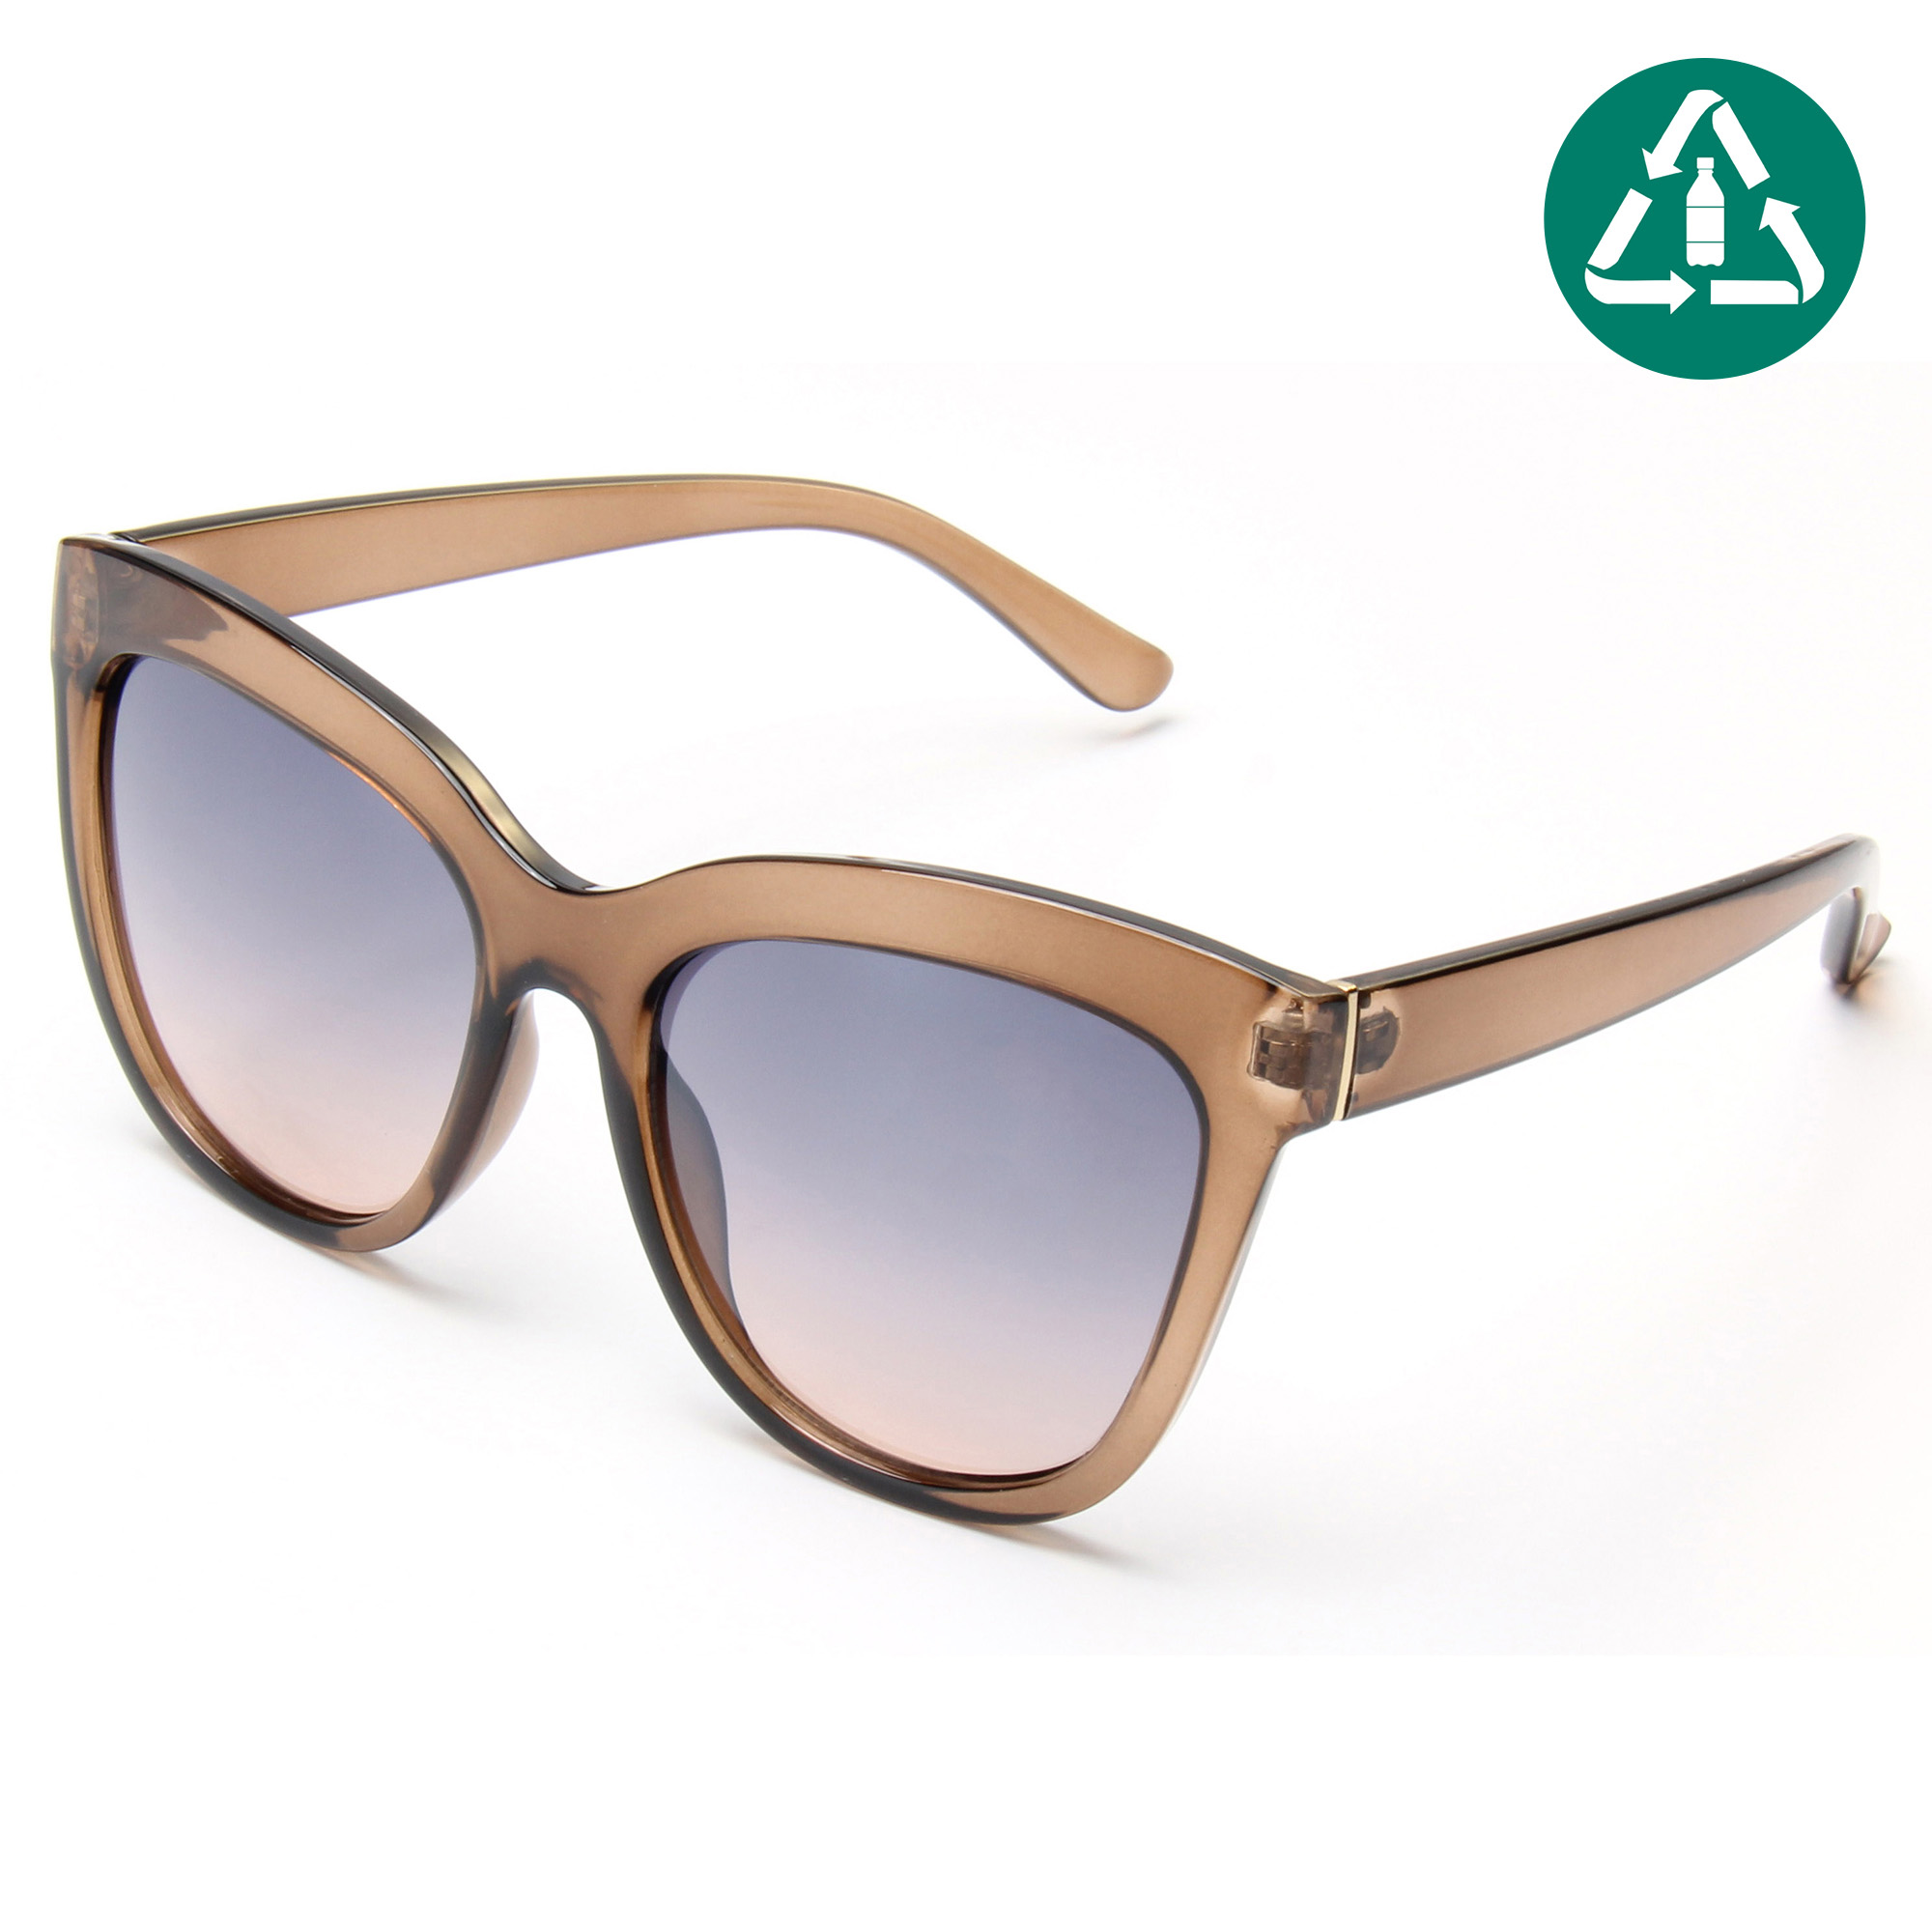 EUGENIA 100% RPCTG солнцезащитные очки высокого качества на заказ негабаритные солнцезащитные очки в большой оправе в форме кошачьего глаза для женщин